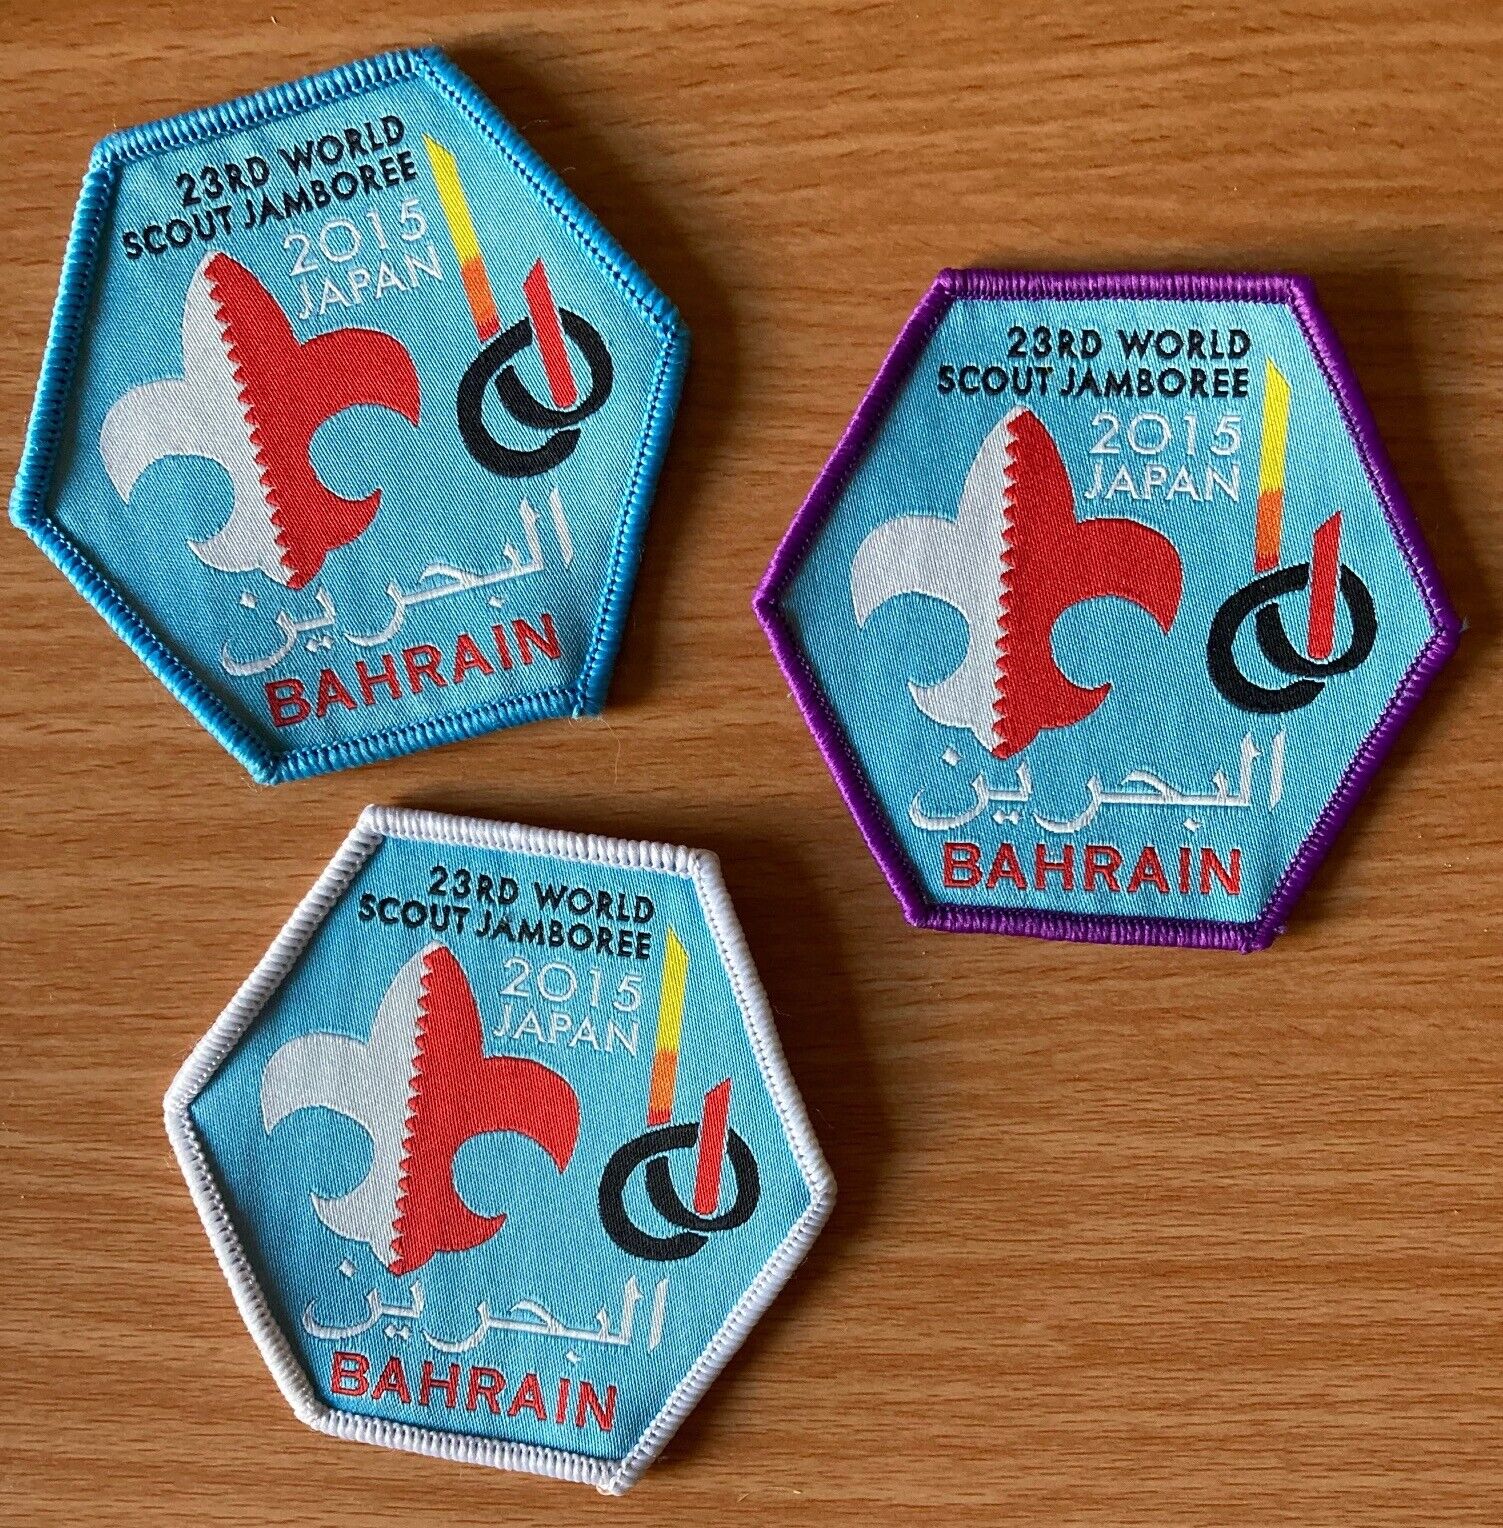 2019 23RD World Scout Jamboree 3 BAHRAIN Contingent badges 2015 